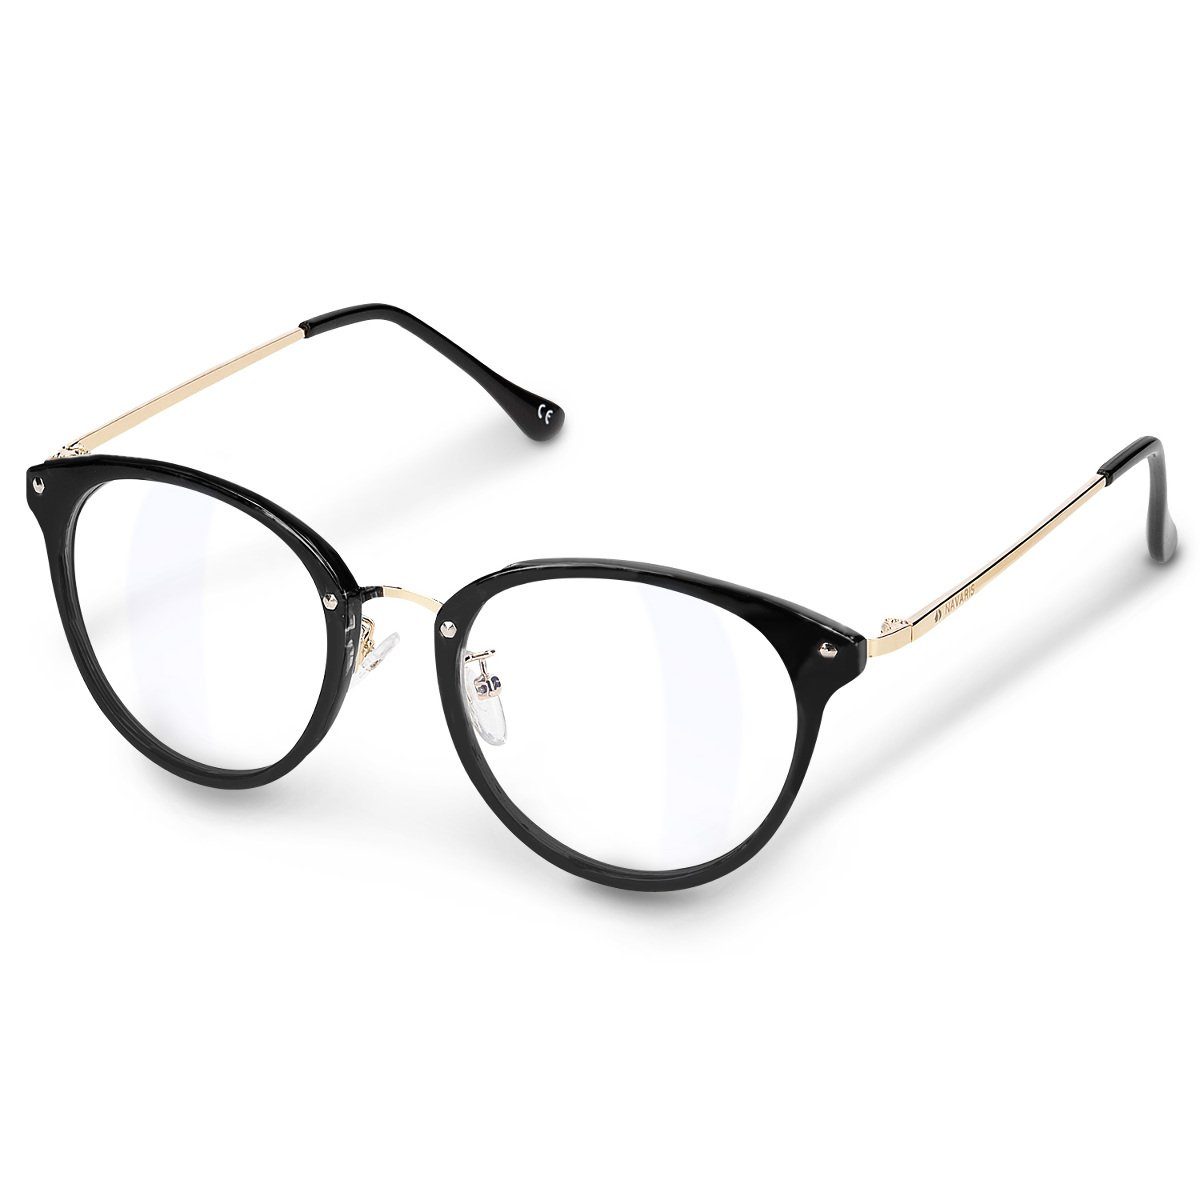 Navaris Brille, Retro Brille ohne Sehstärke - Damen Herren Vintage 50er  Nerd Brille - Anti Blaulicht Computer Nerdbrille ohne Stärke - mit  Metallbügeln